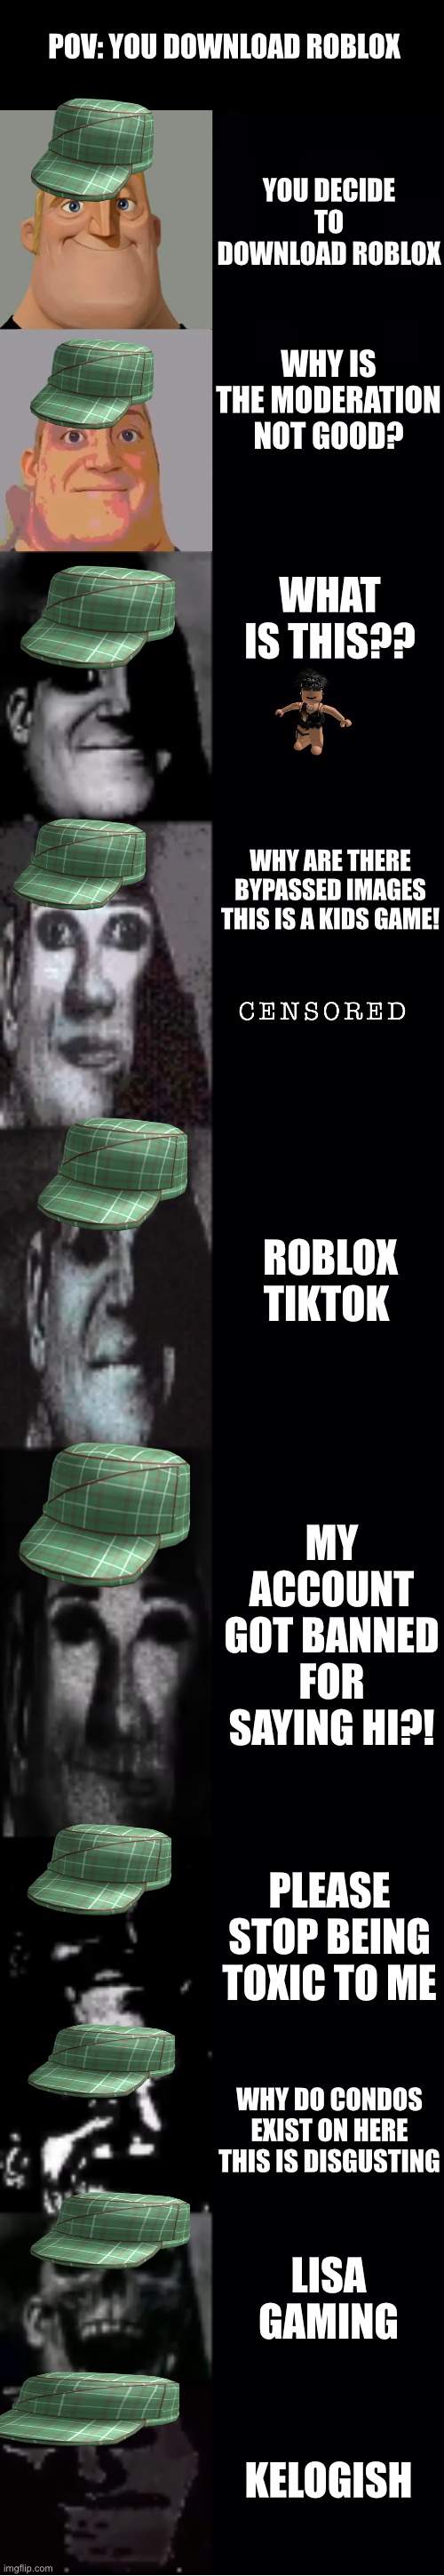 me da conta roblox｜Pesquisa do TikTok